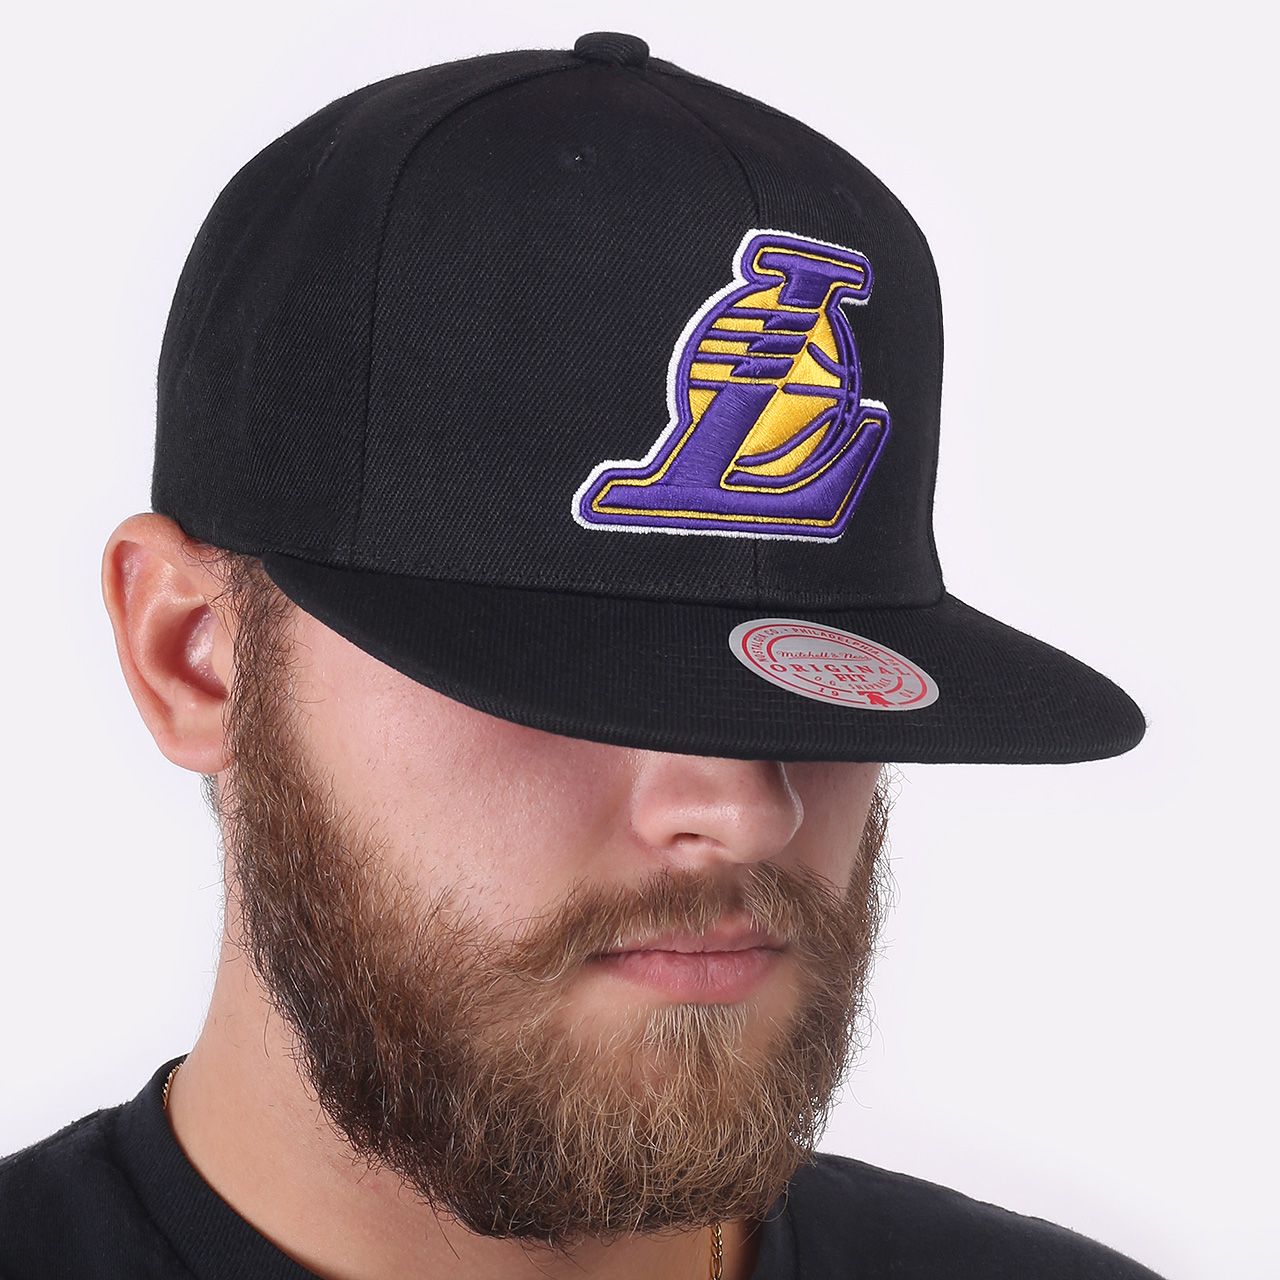  черная кепка Mitchell and ness Lakers 6HSSJS19078-LALBLCK - цена, описание, фото 1